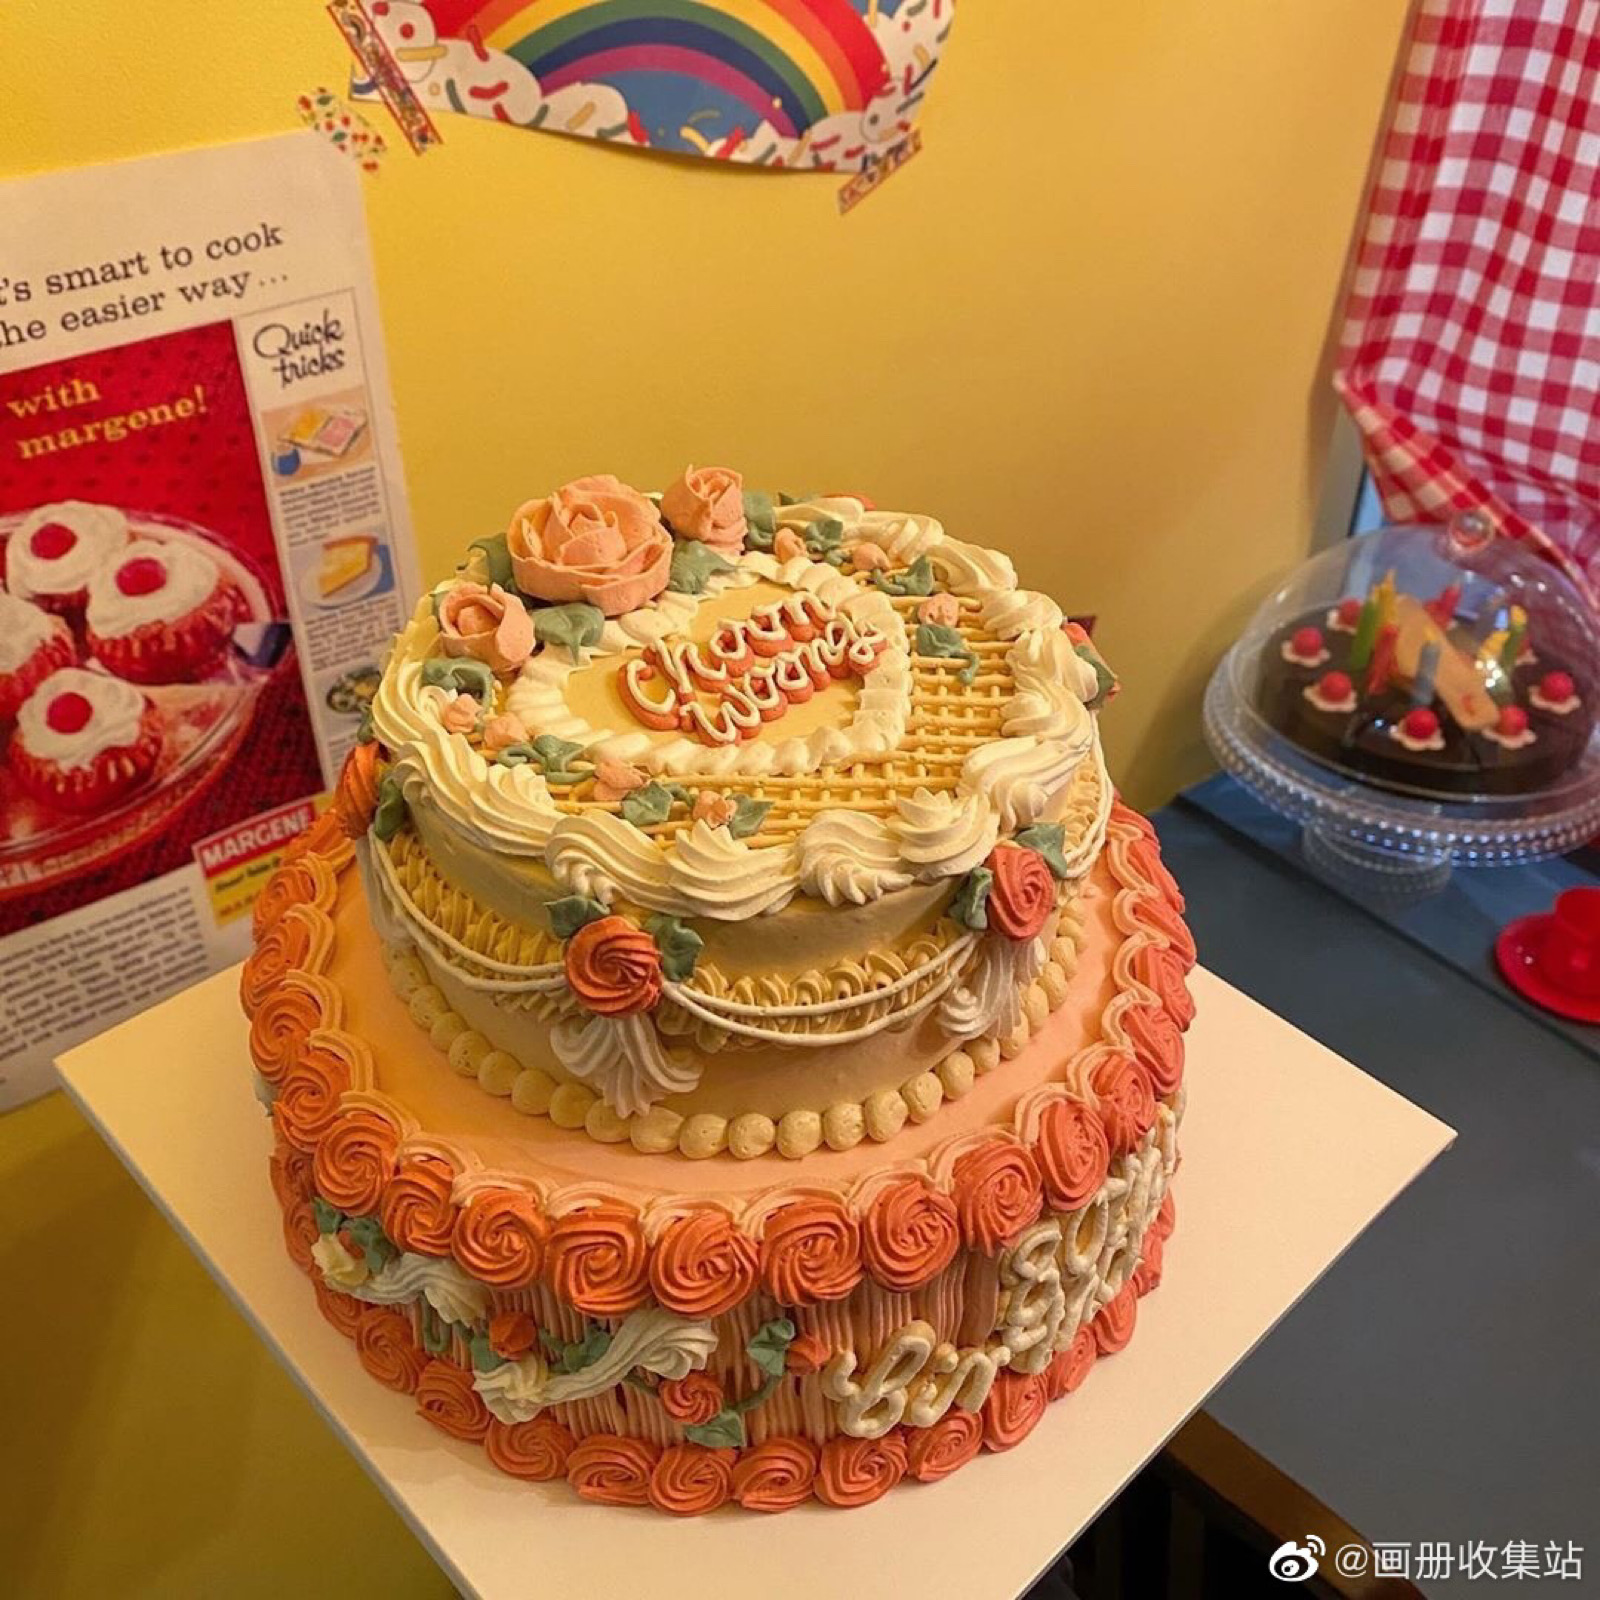 超美的生日蛋糕图片大全 欧式生日蛋糕图片大全多层